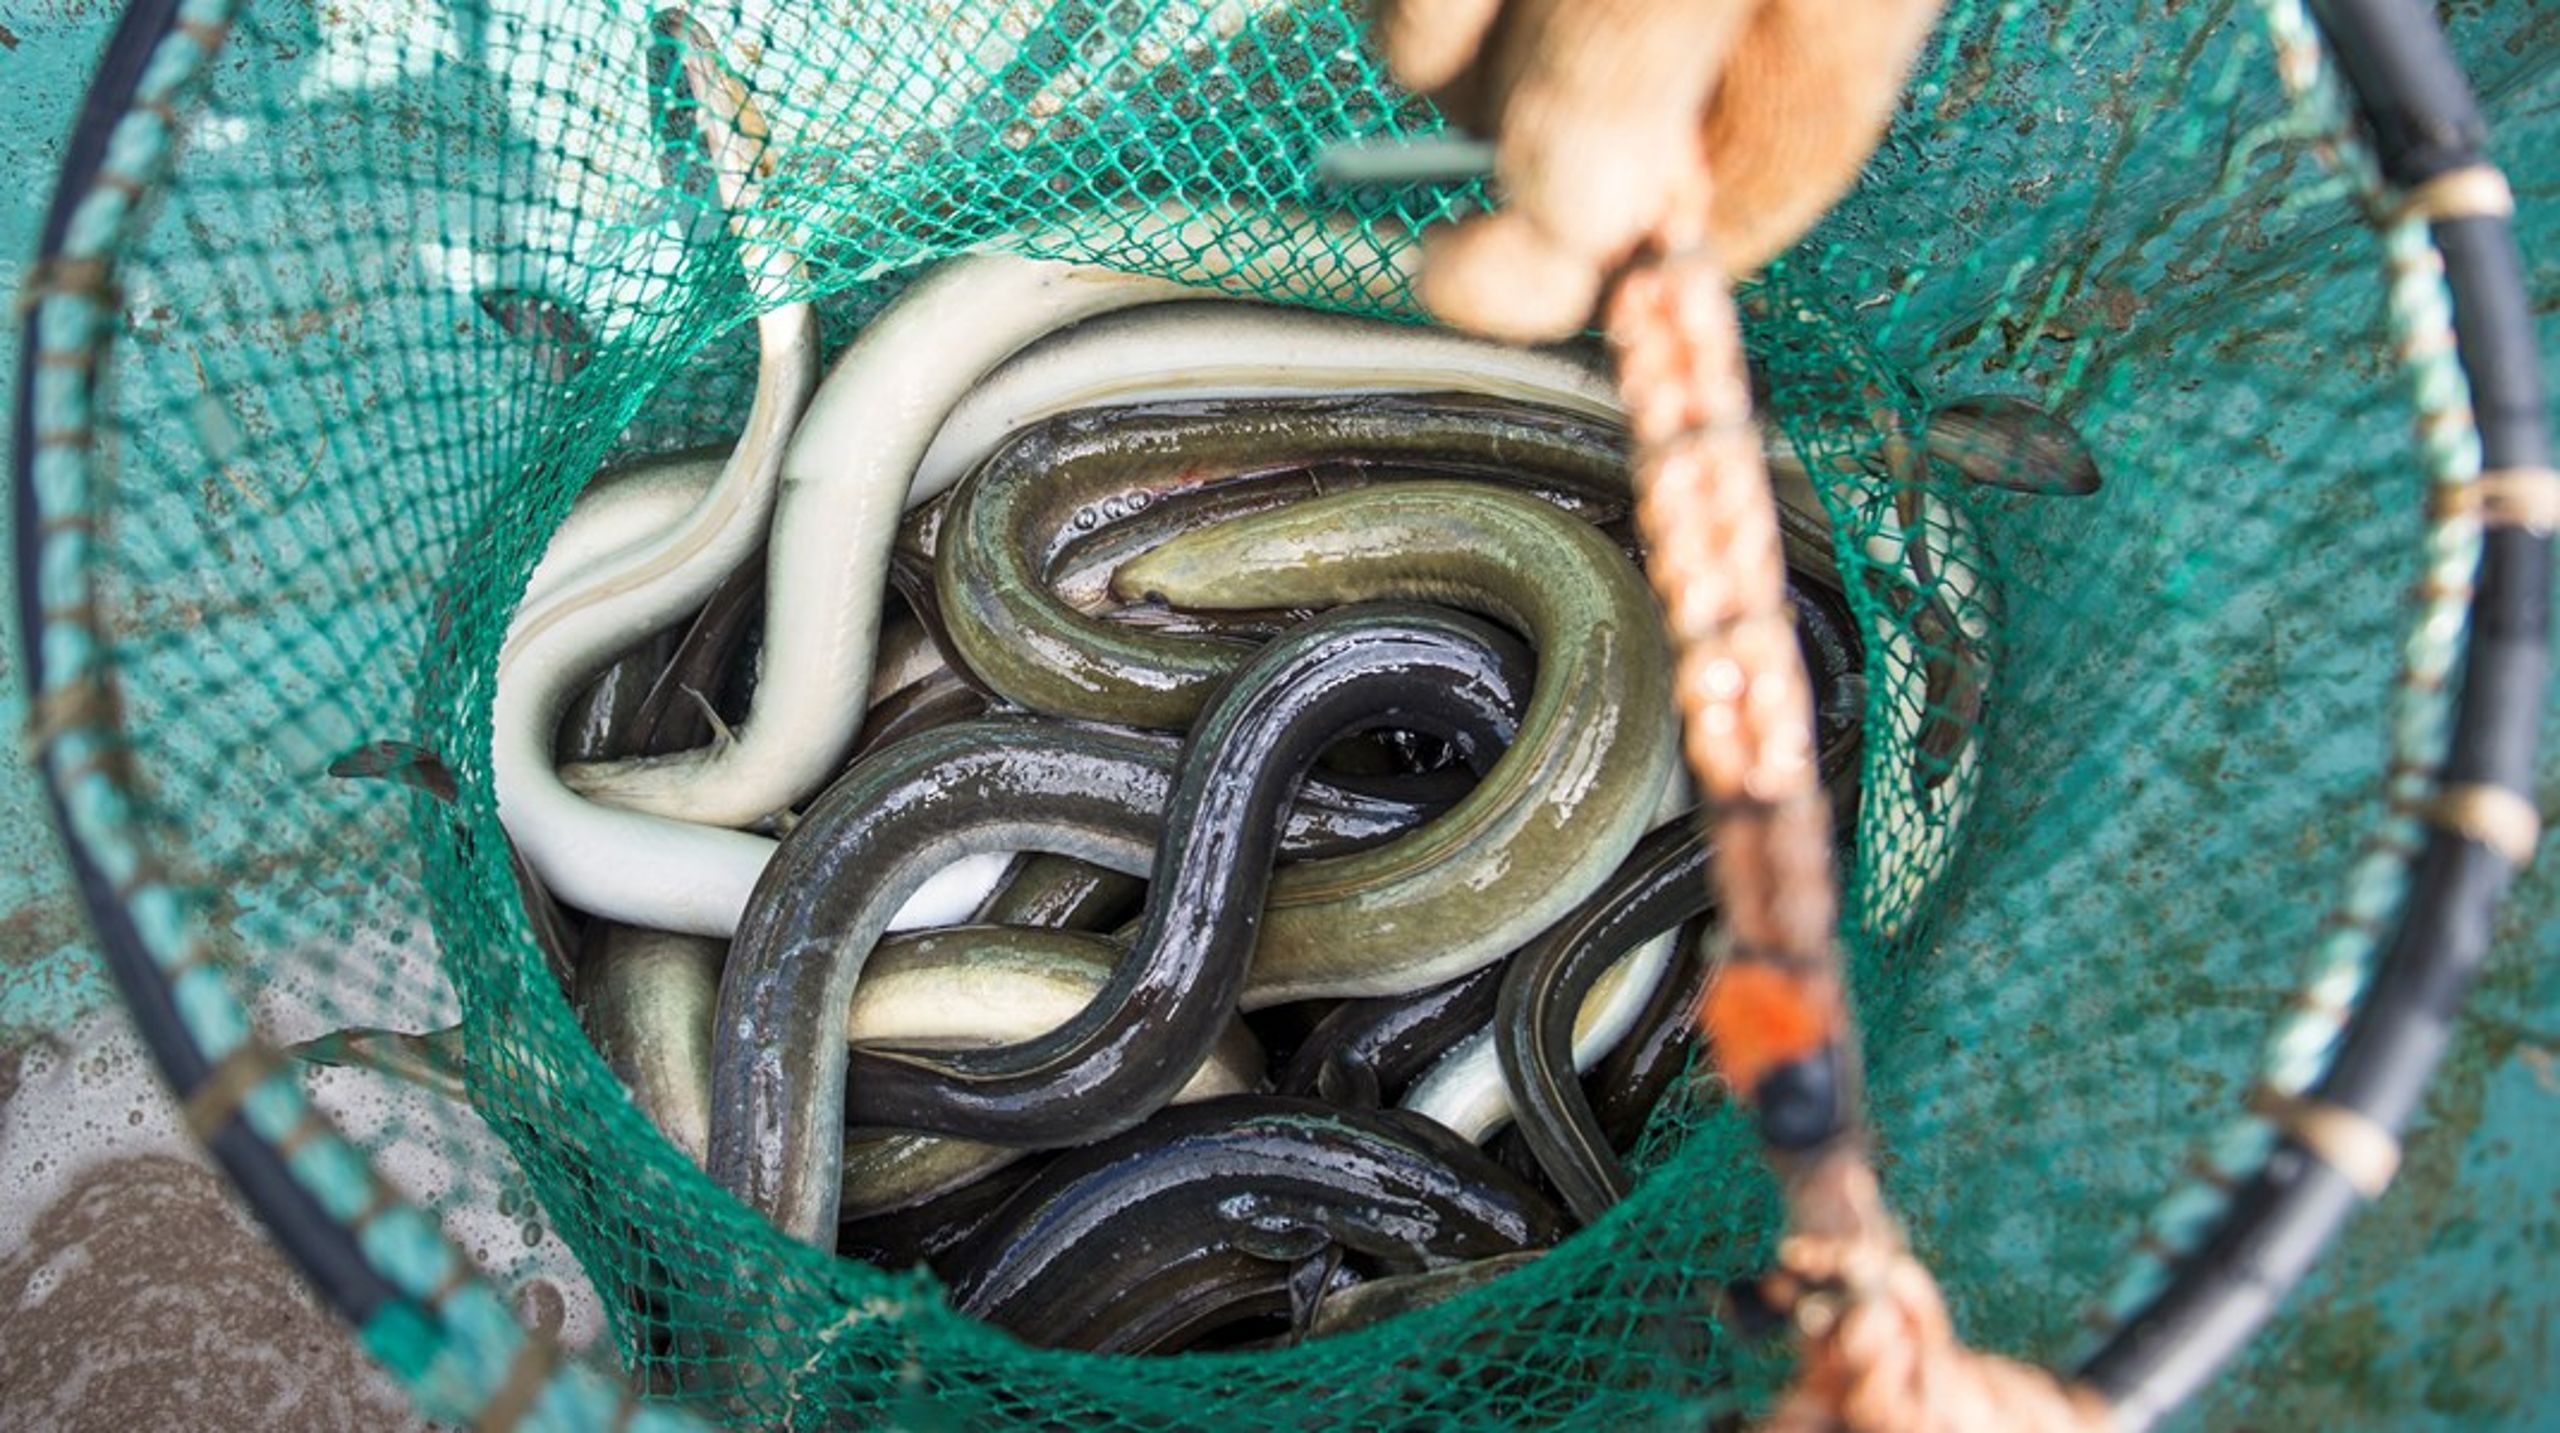 Fokus läggs på ett falskt narrativ om att ålens öde huvudsakligen vilar i kraftbolagens händer, medan det svenska yrkesfisket efter ål är litet och obetydligt, skriver debattörerna.